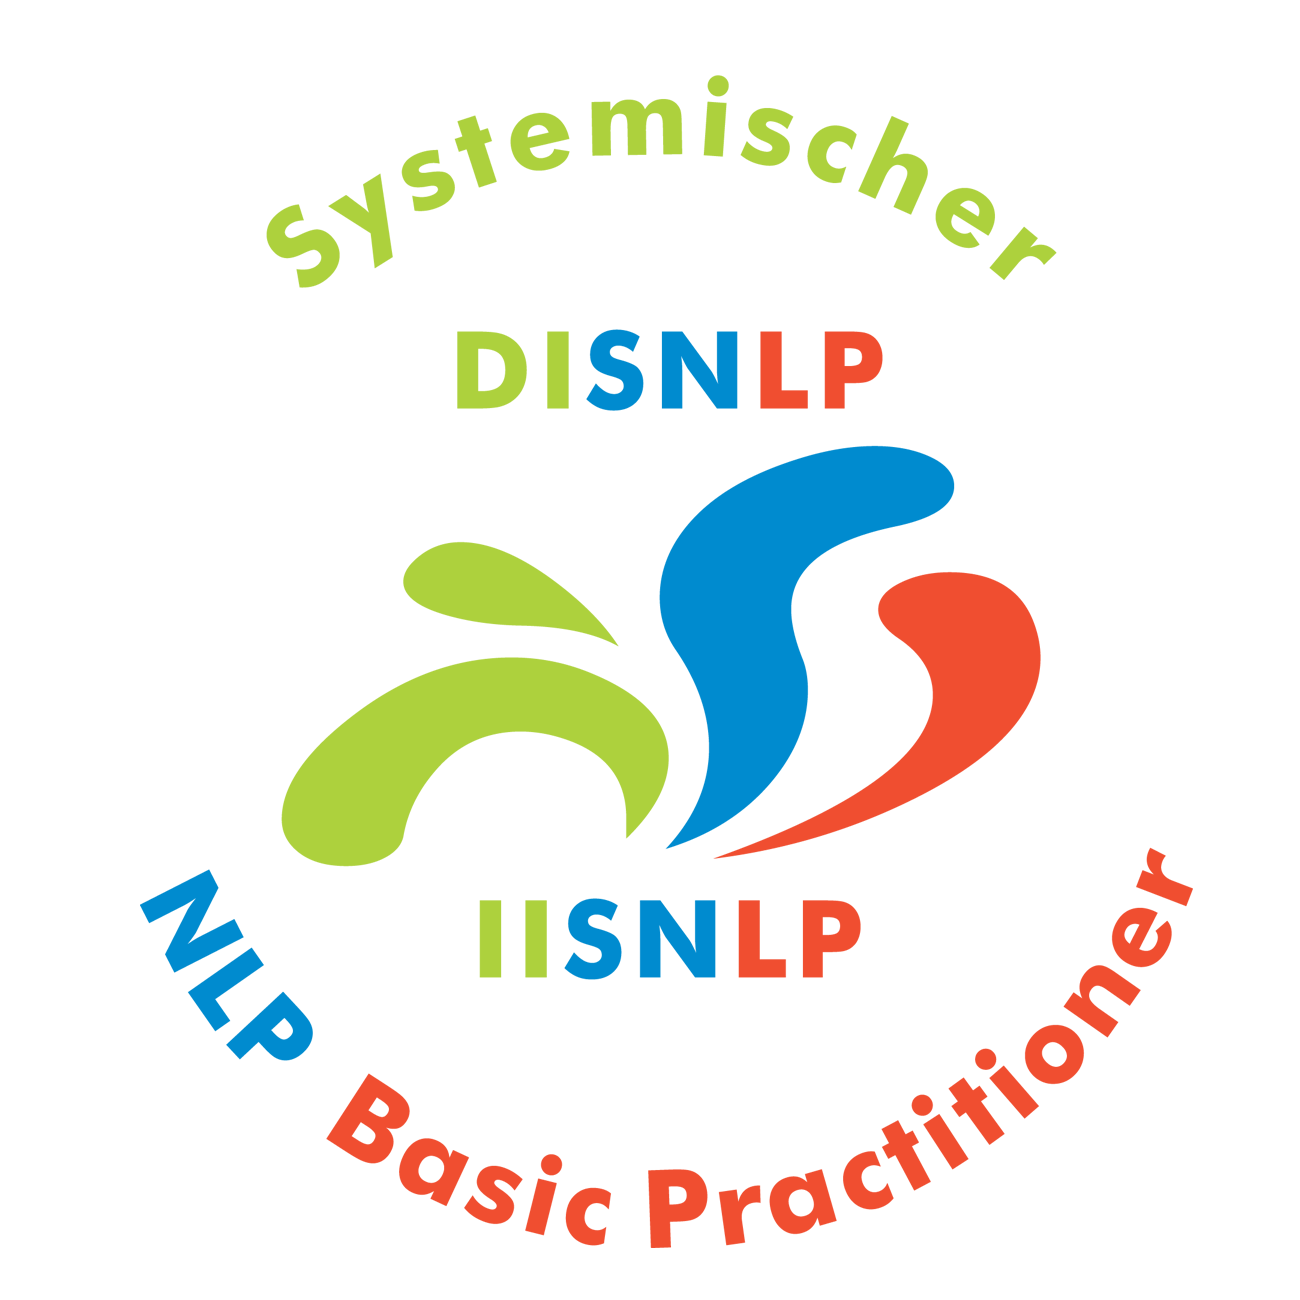 Seminar Selbstbewusstsein, Selbstvertrauen, Selbstwert, Selbstsicherheit stärken Regensburg Landkreis mit NLP Coaching Kurs für mehr Selbstbewusstsein